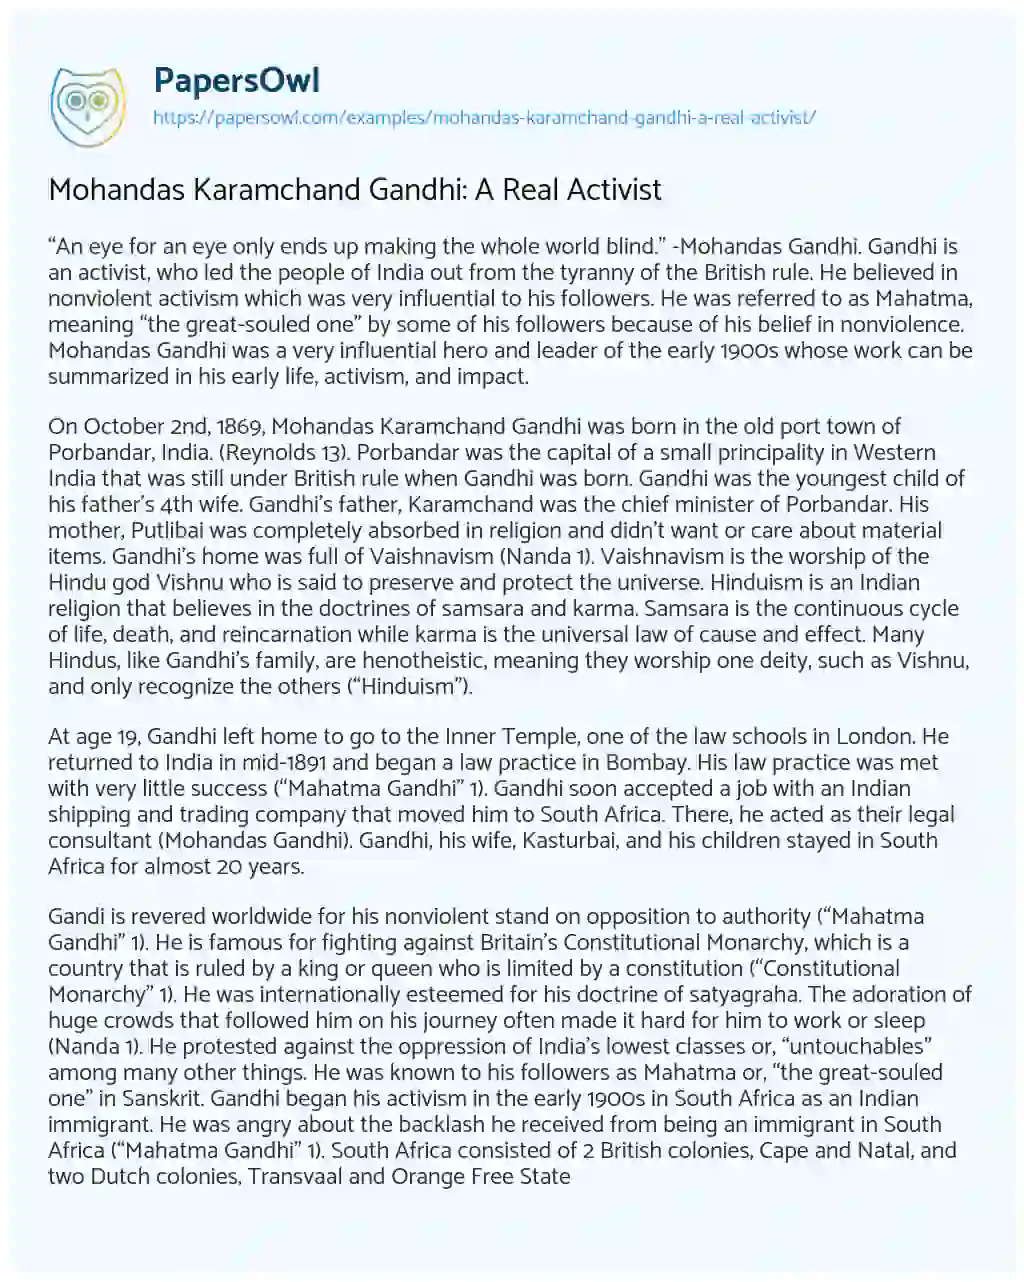 Mohandas Karamchand Gandhi: a Real Activist essay